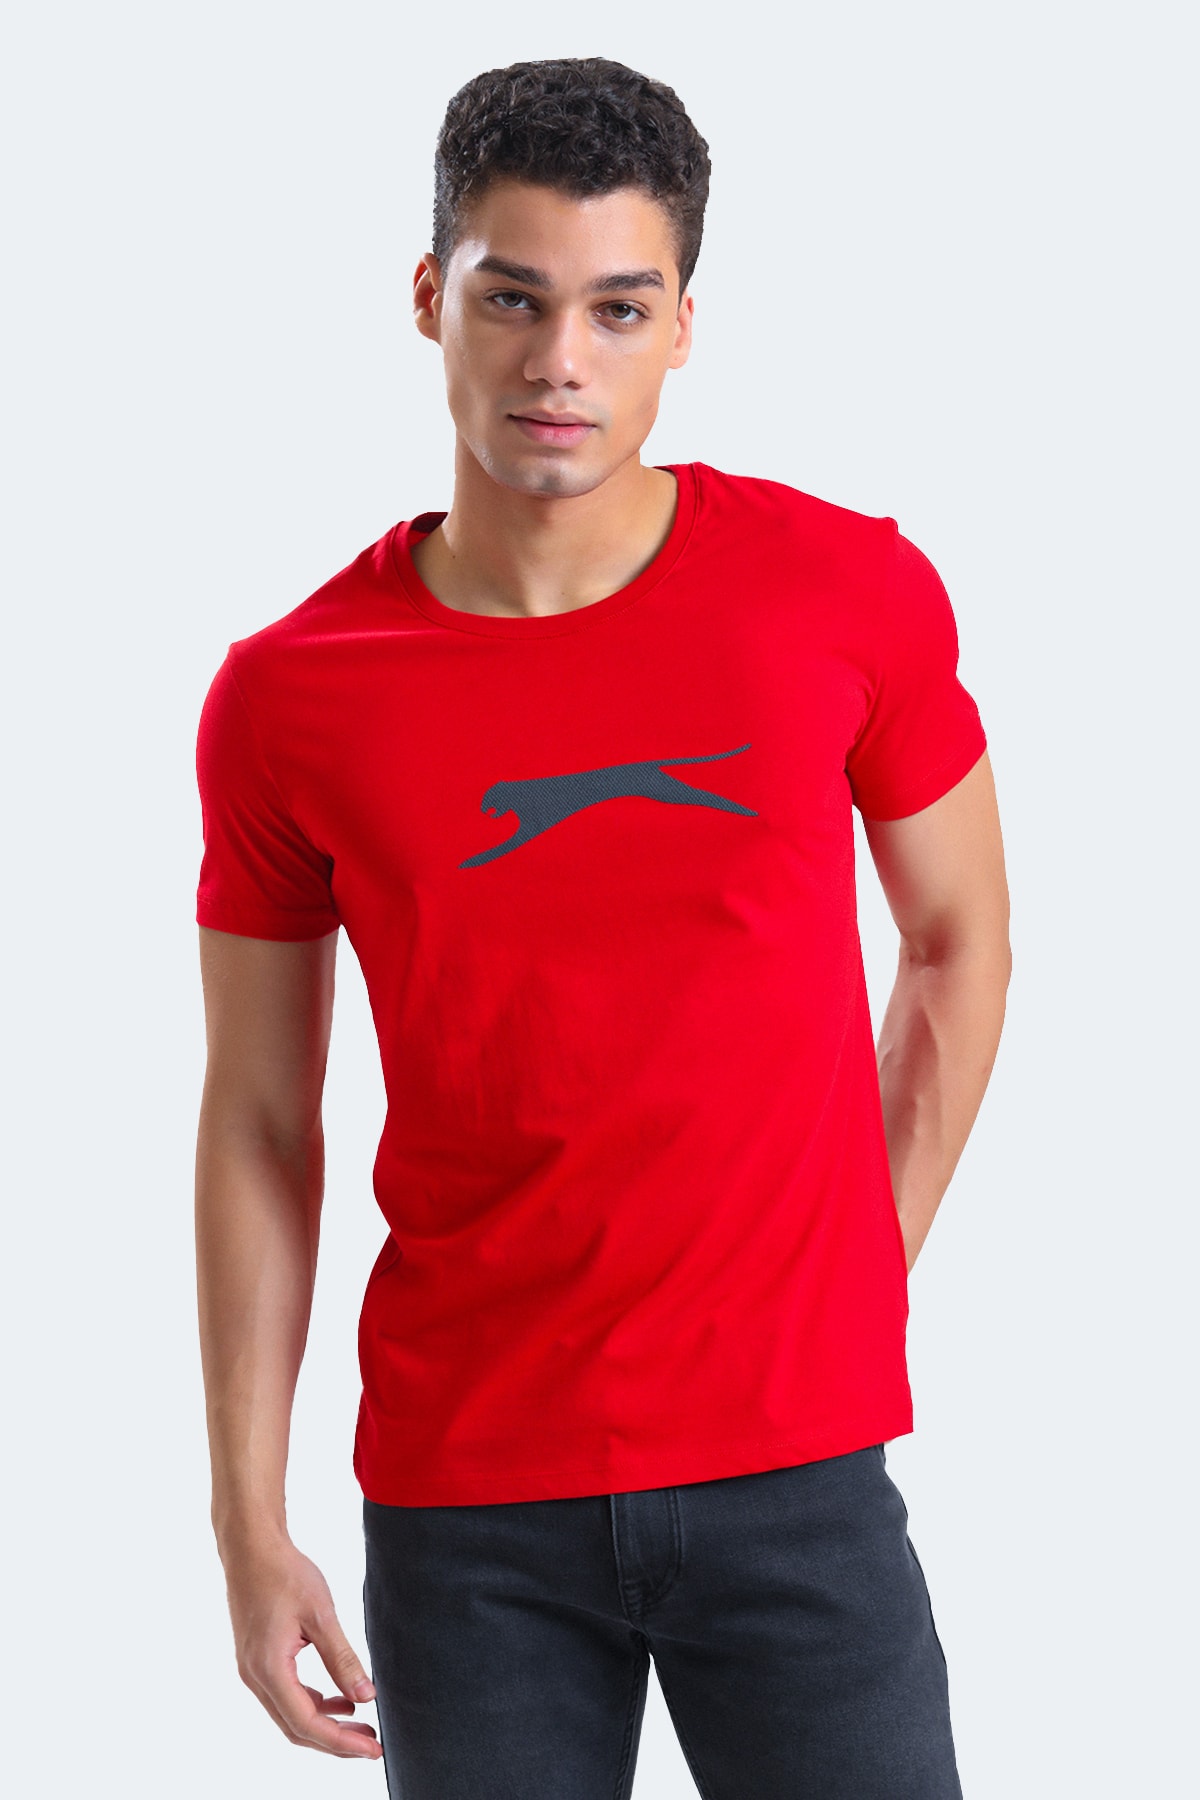 Slazenger Sector Men's T-shirt Red